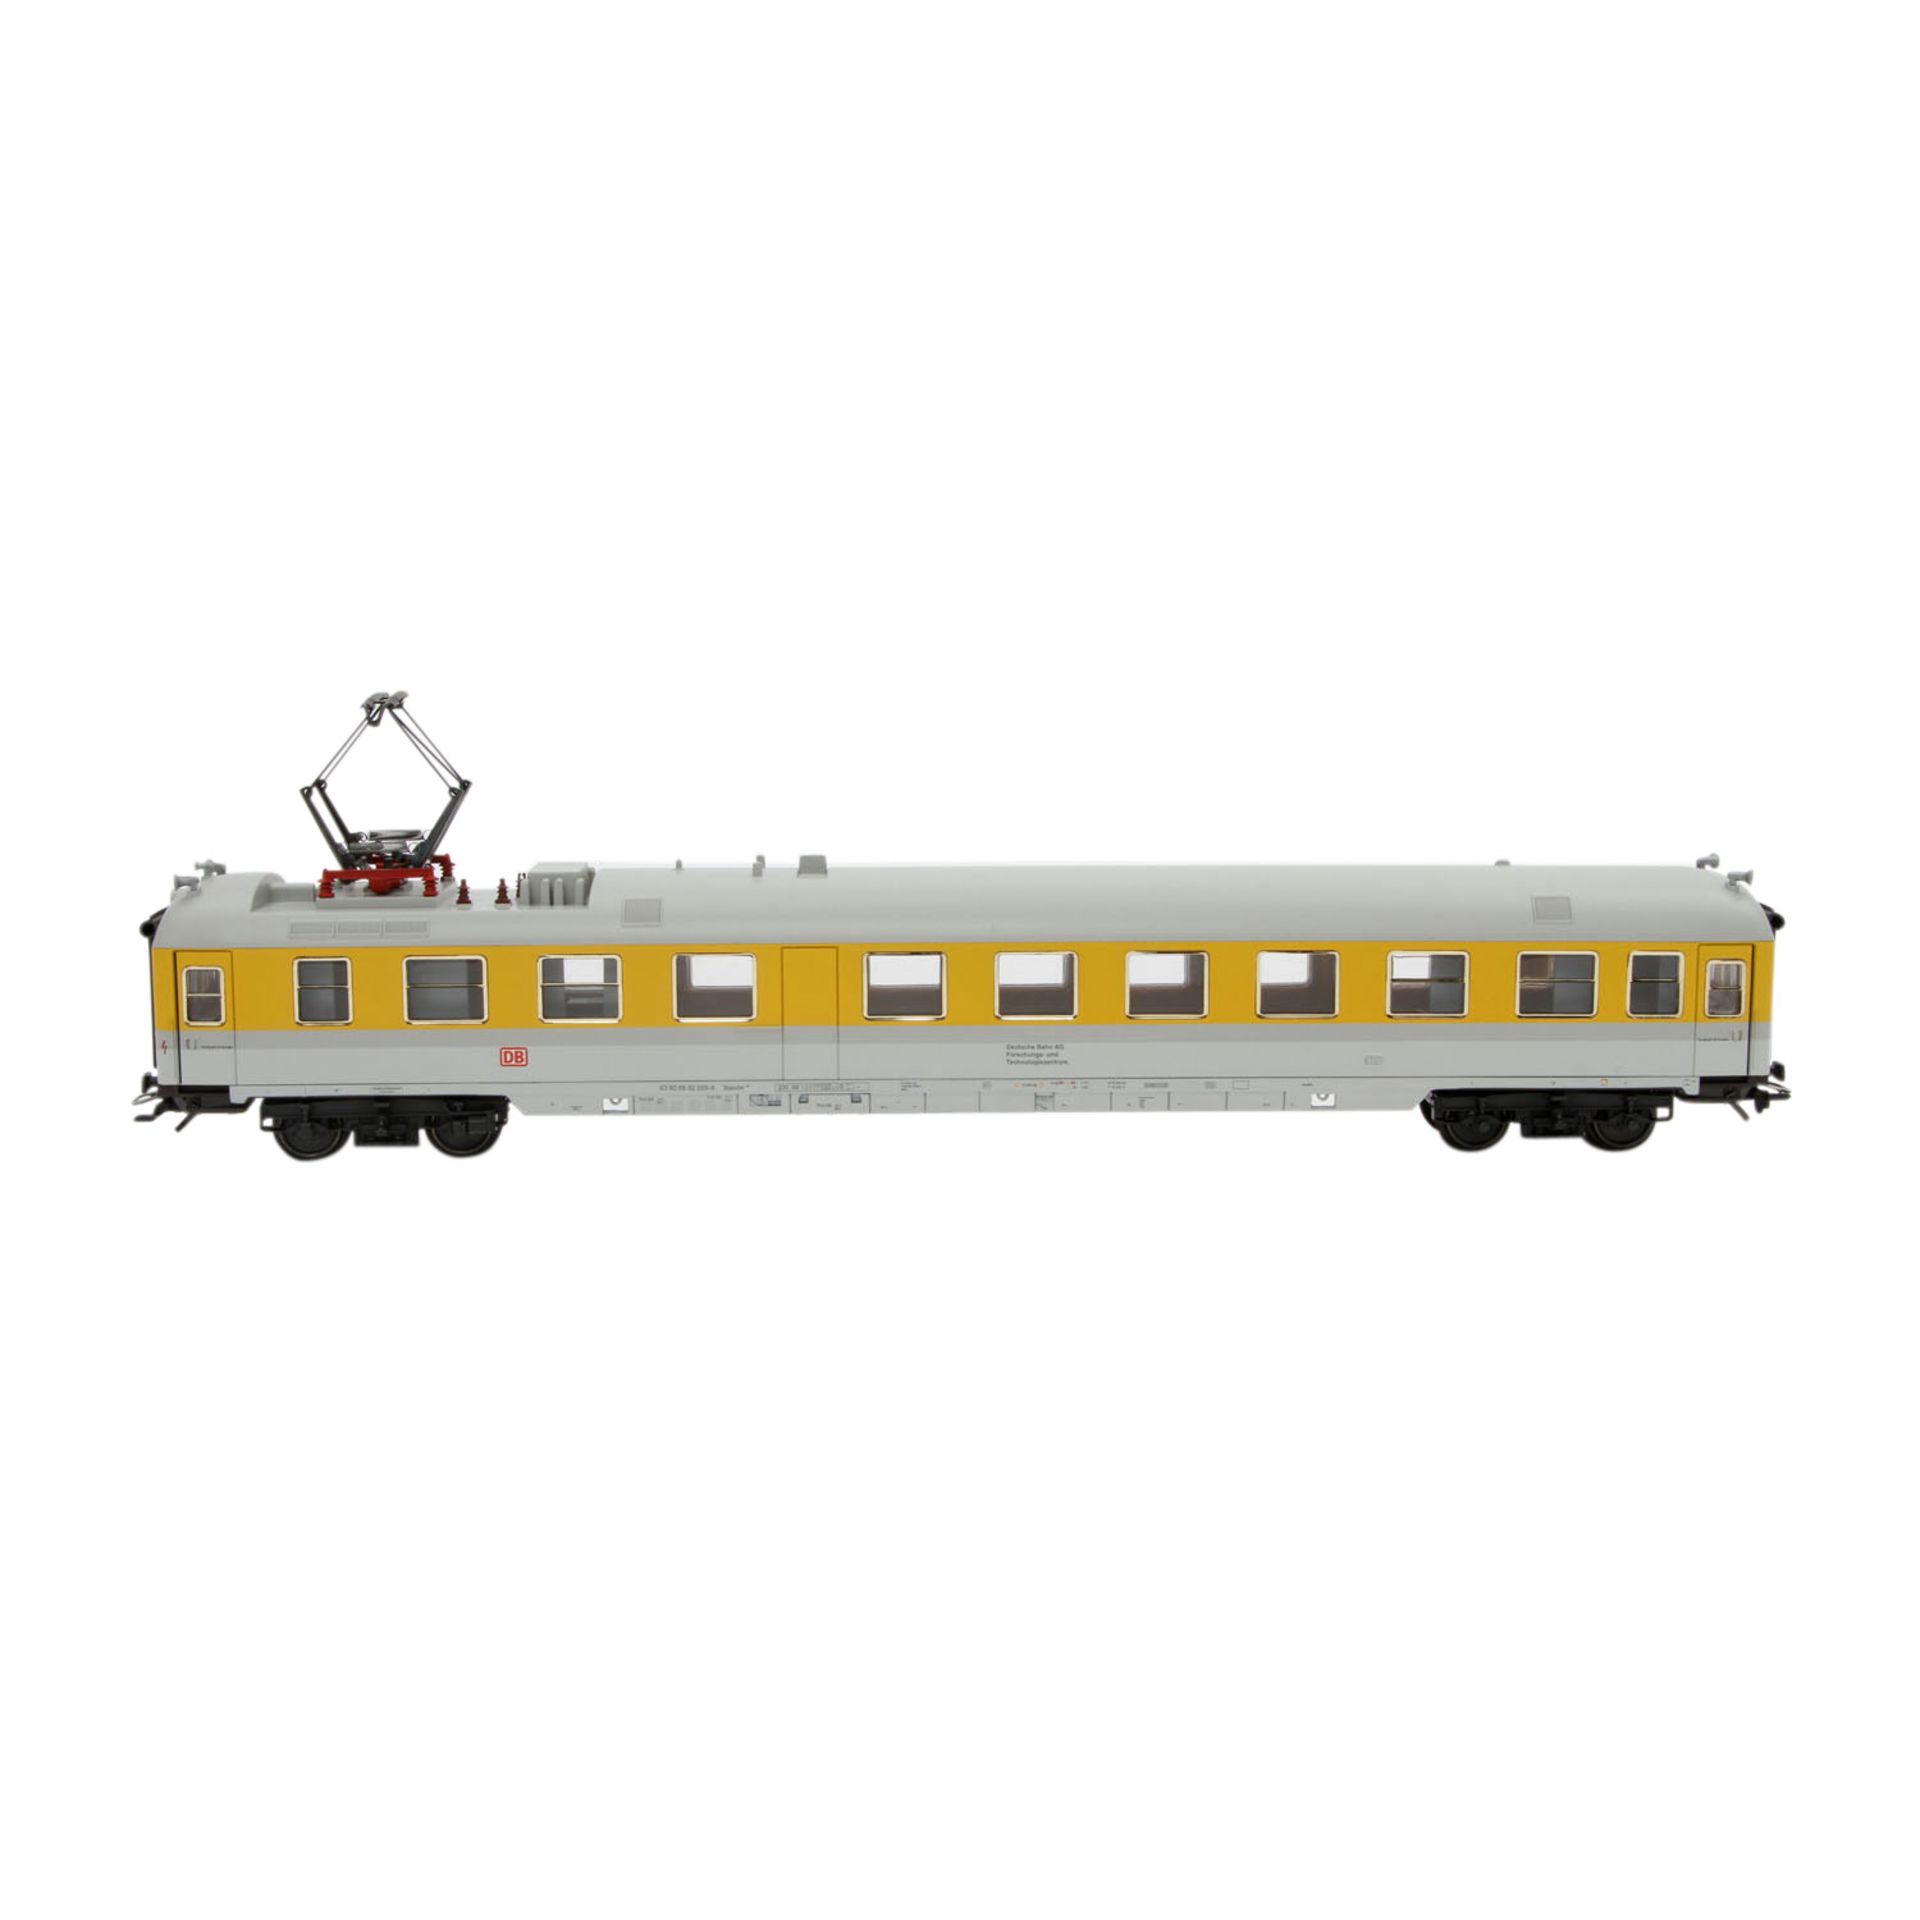 MÄRKLIN Set von drei Messwagen 42996, Spur H0,einmalige Serie, Kunststoff-Gehäuse, hellgrau/gelb, DB - Image 2 of 5